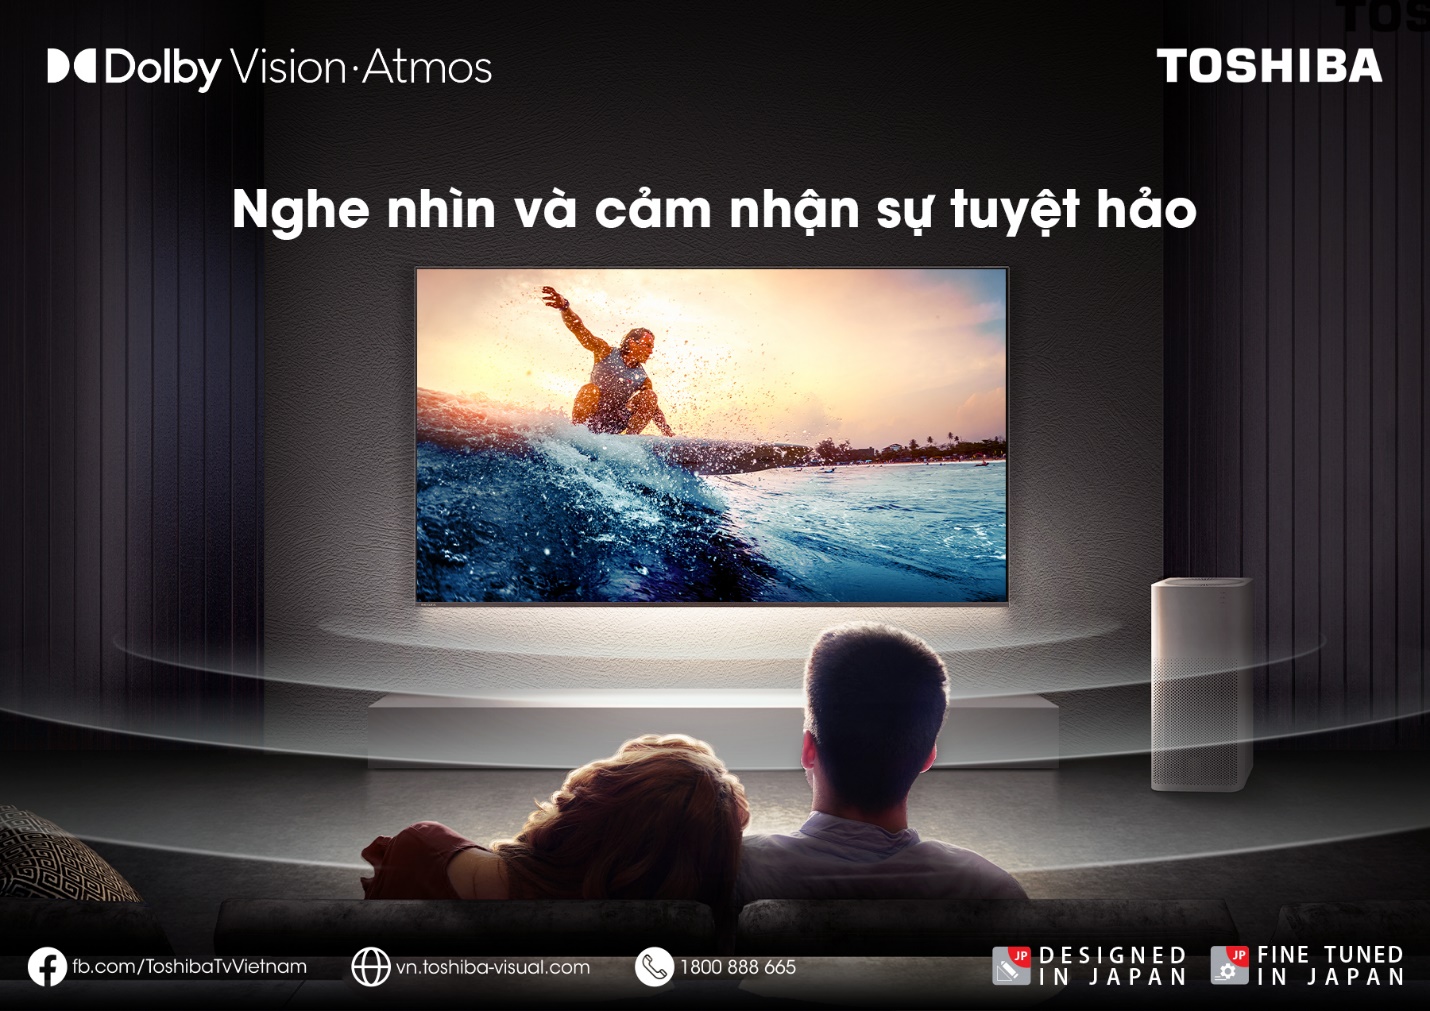 TV Toshiba và dấu ấn công nghệ khó phai với người dùng Việt - Ảnh 5.